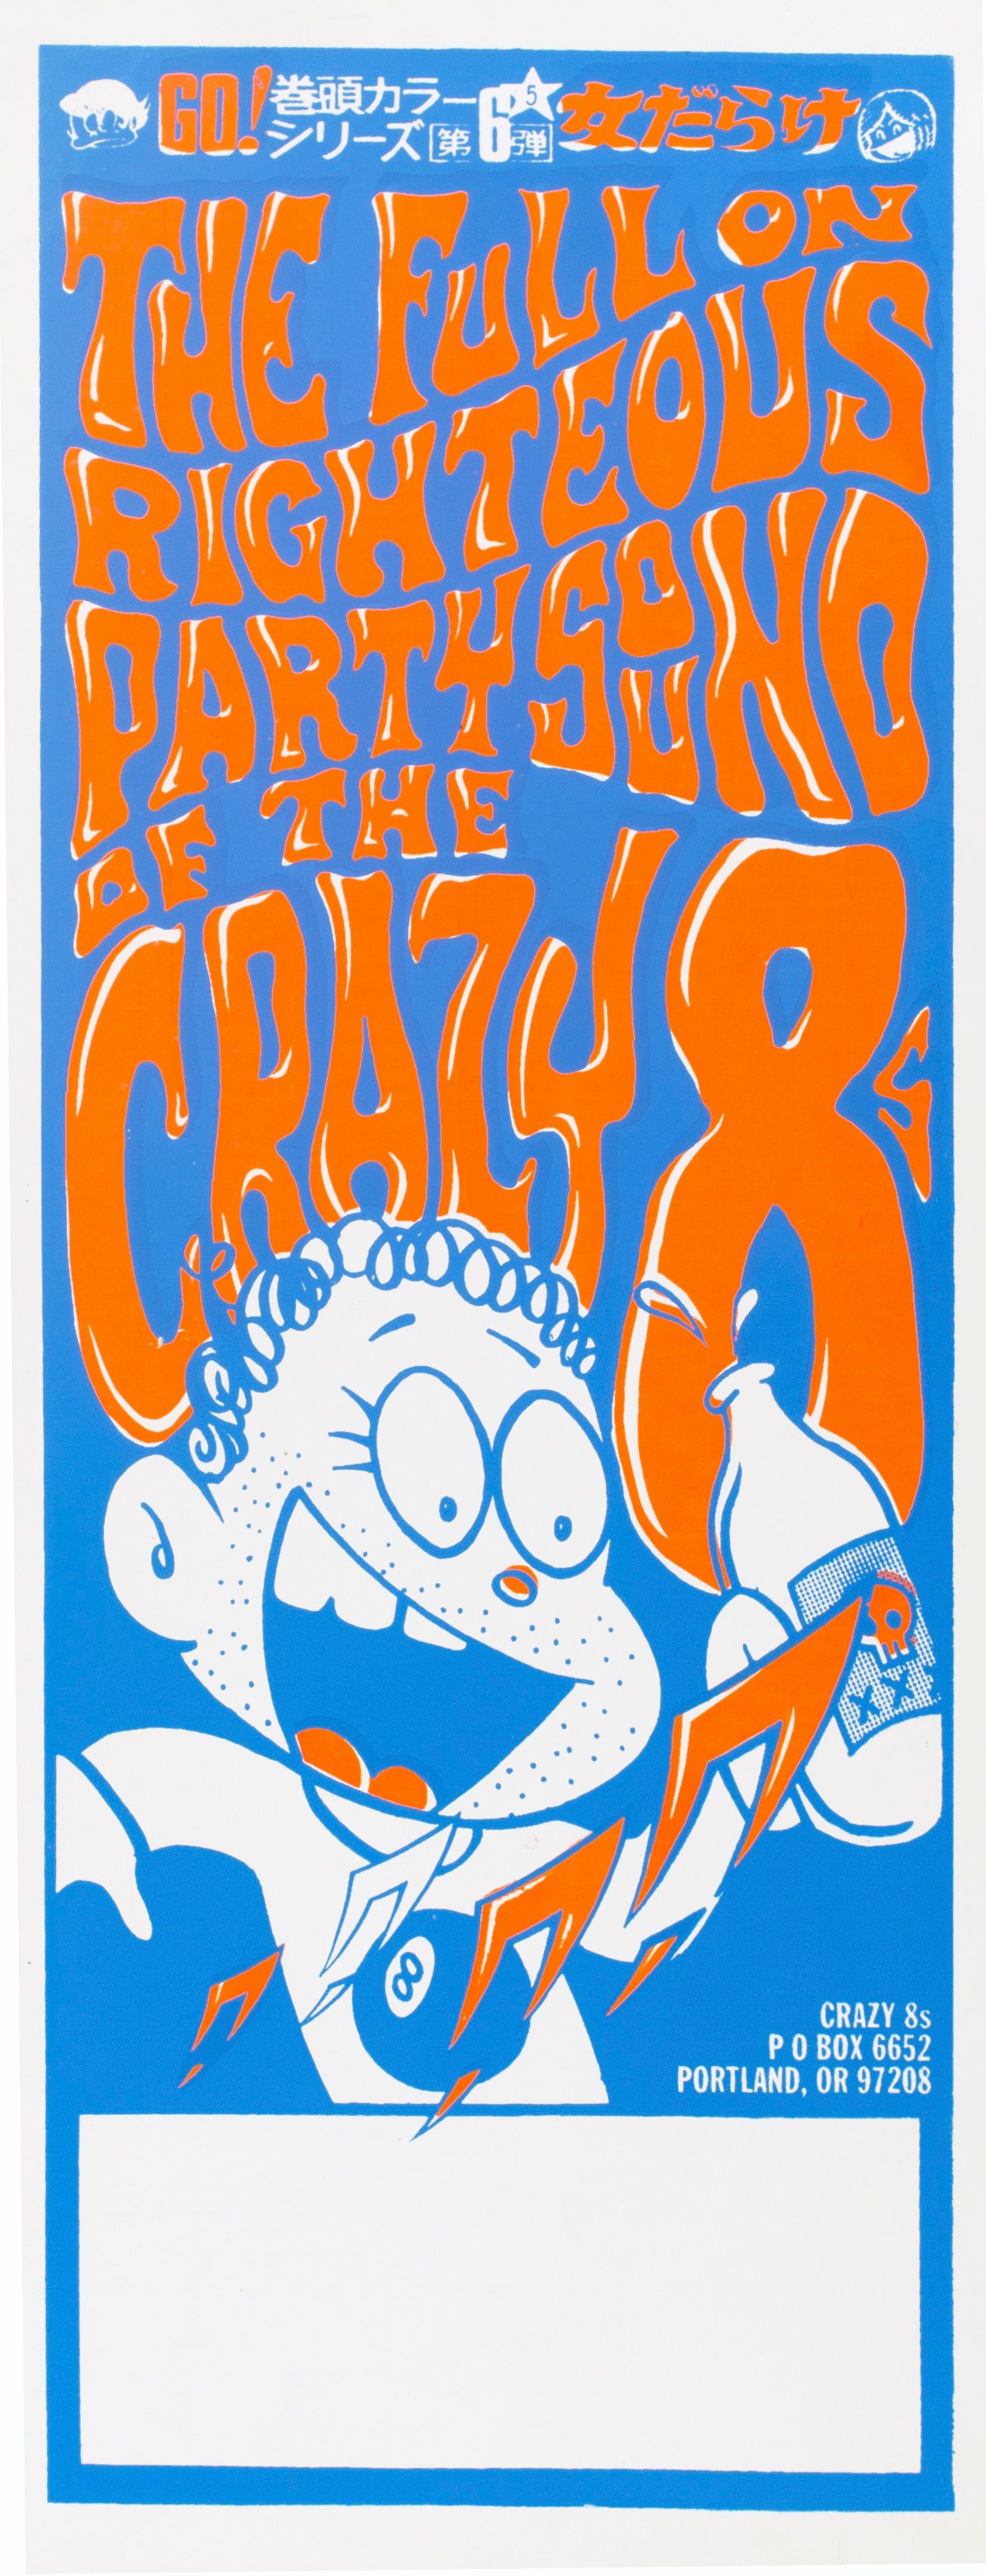 MXP-31.4 Crazy 8s 1980 Tour Blank  Apr 14 Concert Poster